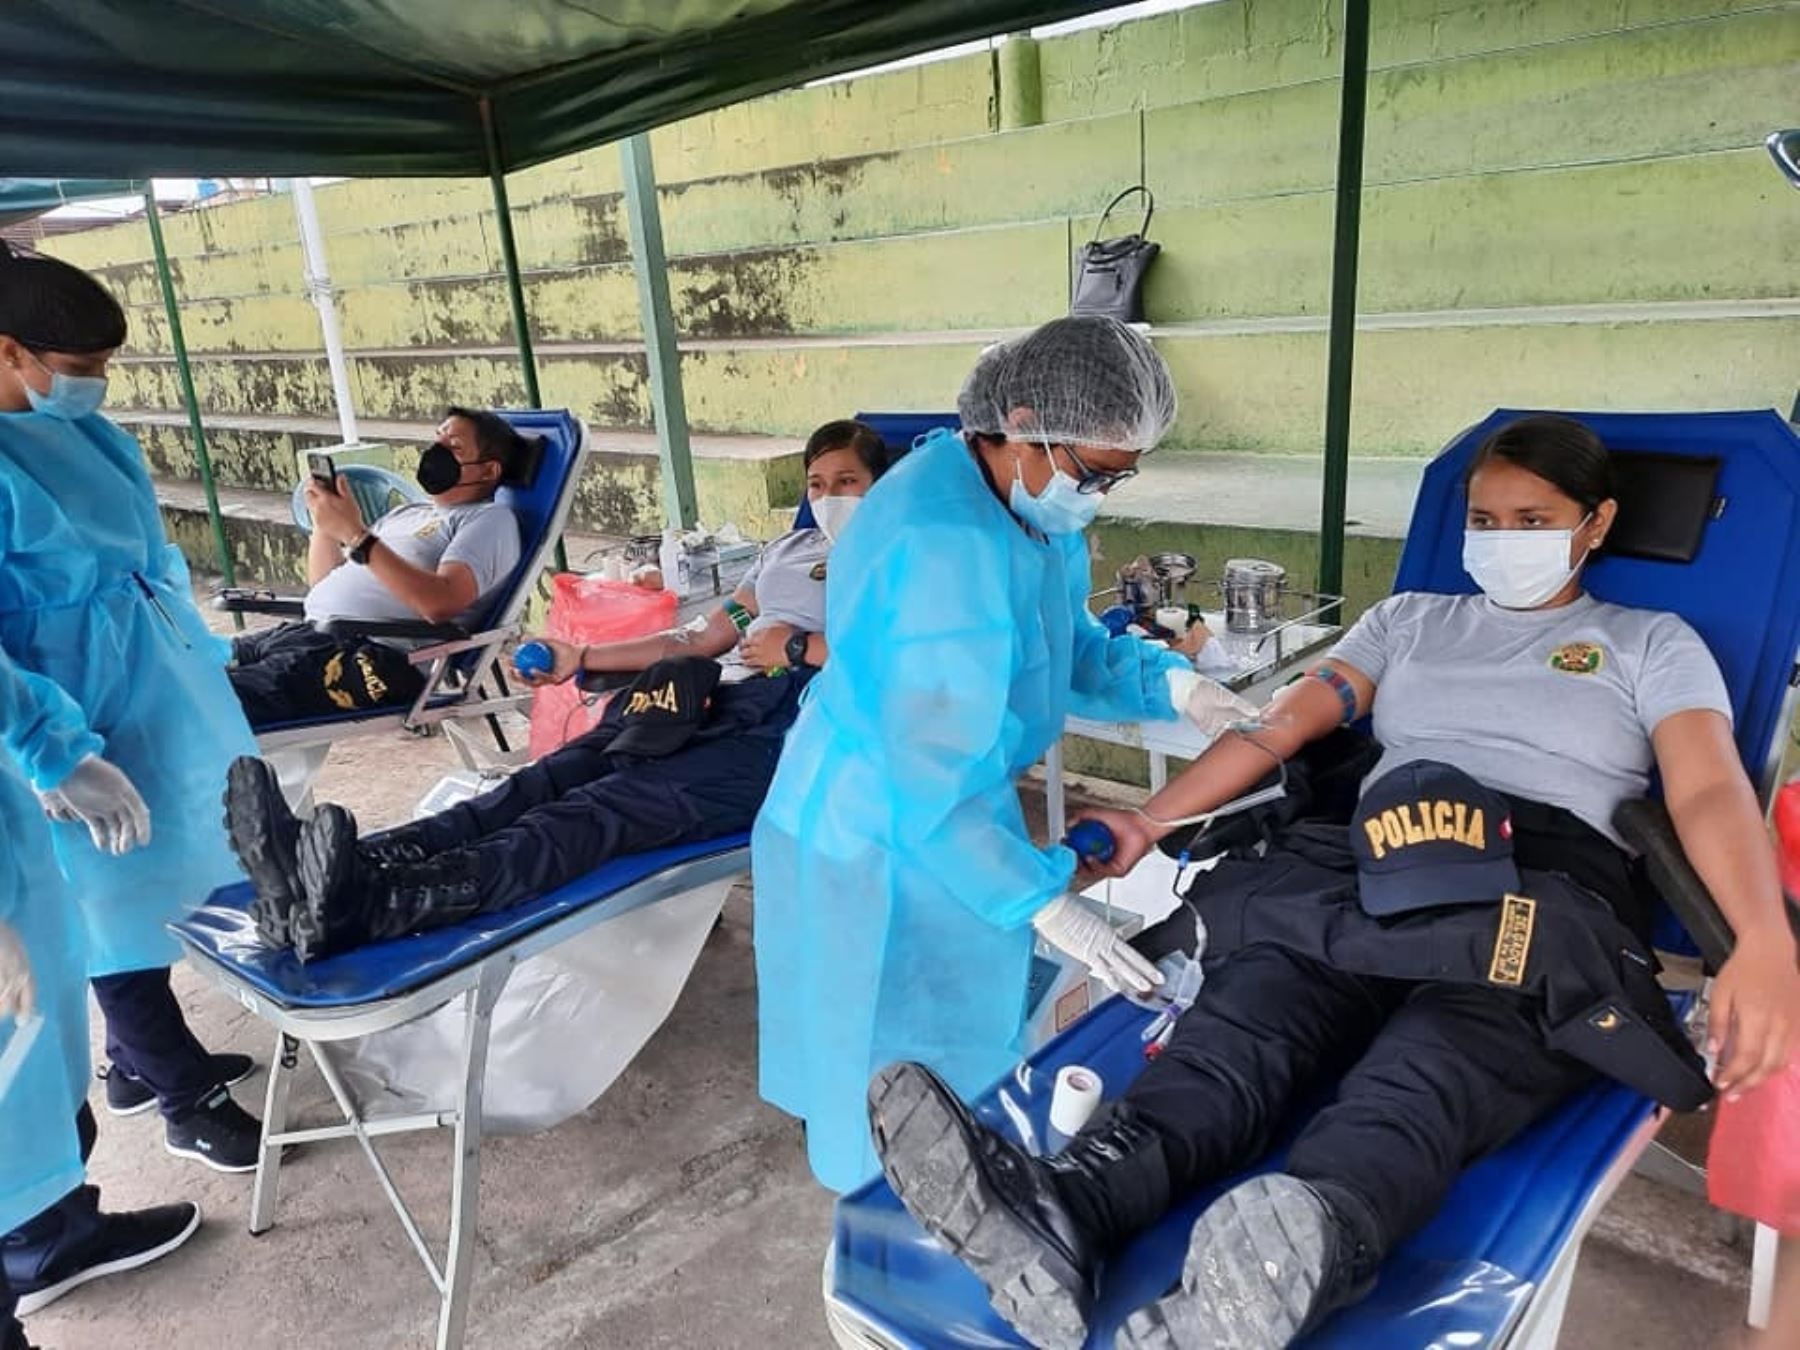 35 policías de San Martín donaron su sangre para ayudar a los pacientes internados en diversos hospitales de esta región. Foto: ANDINA/difusión.